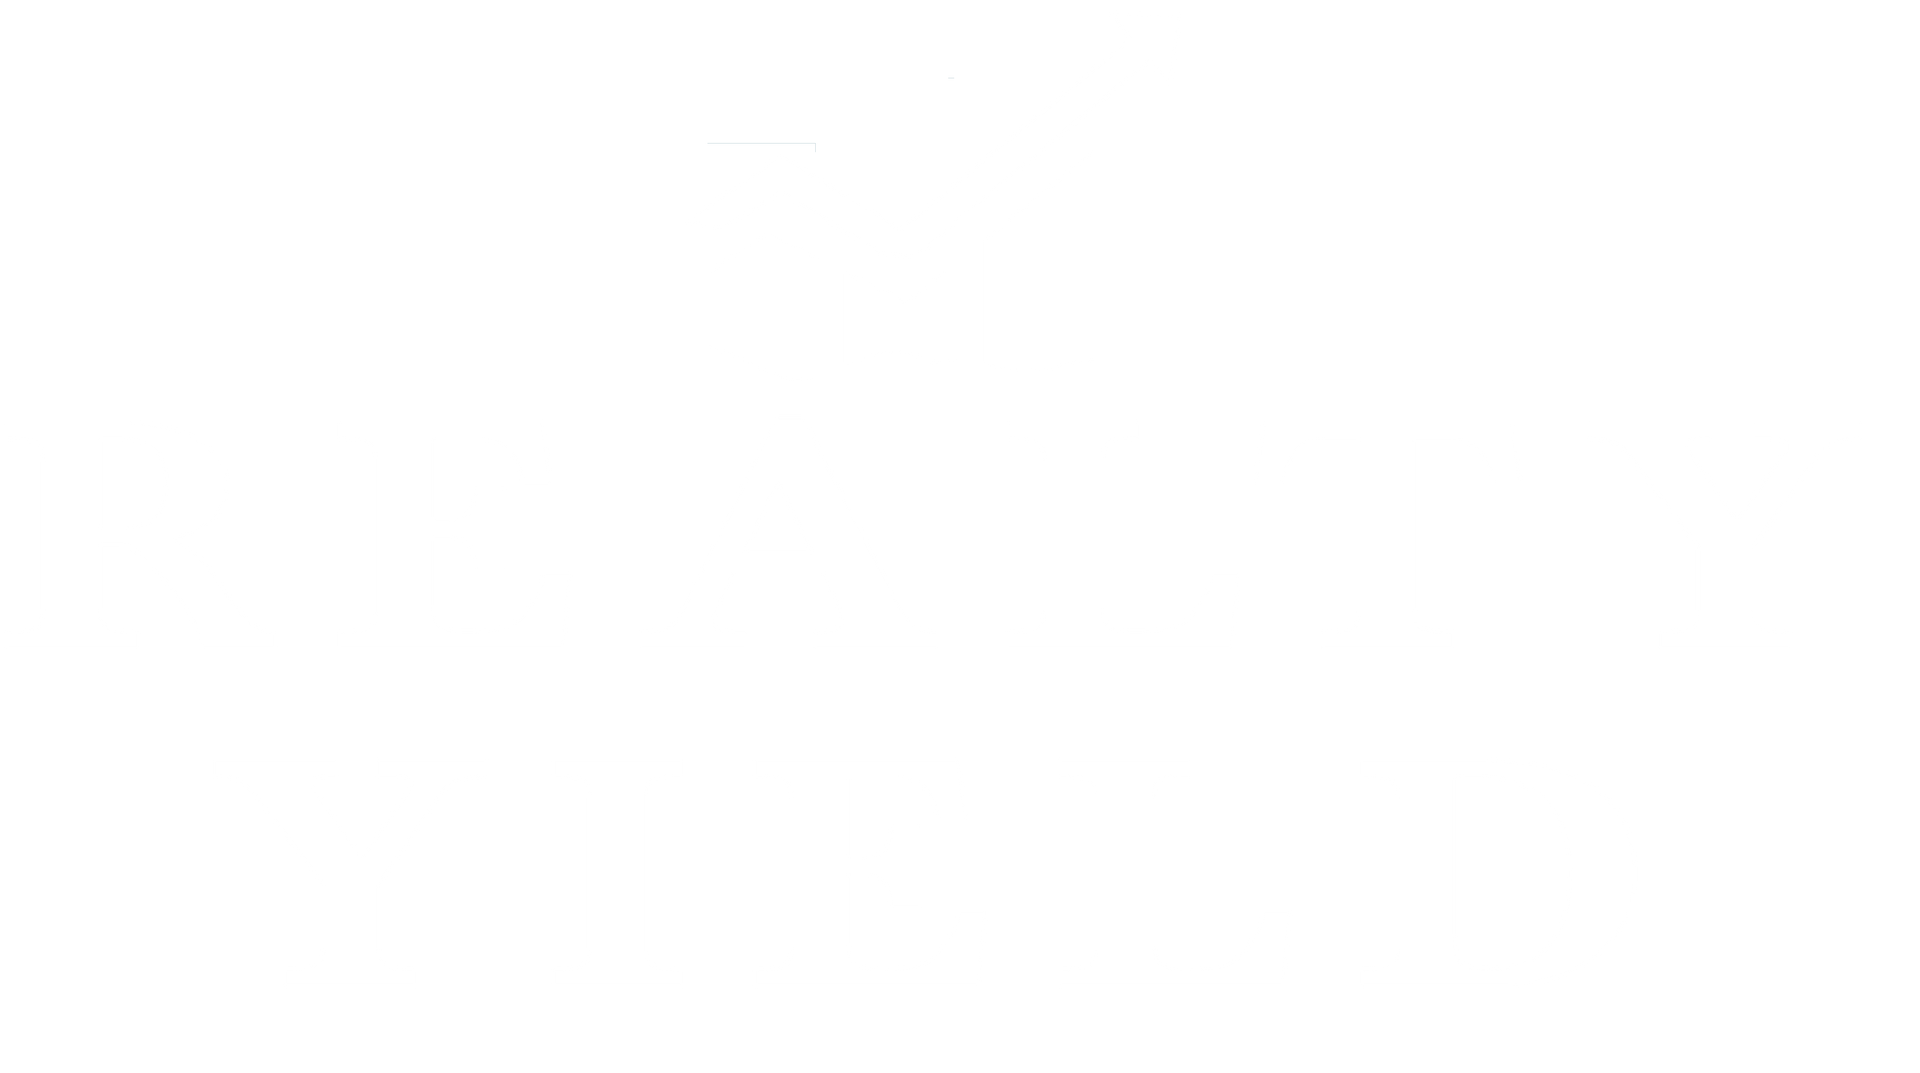 Realty Yield Logo